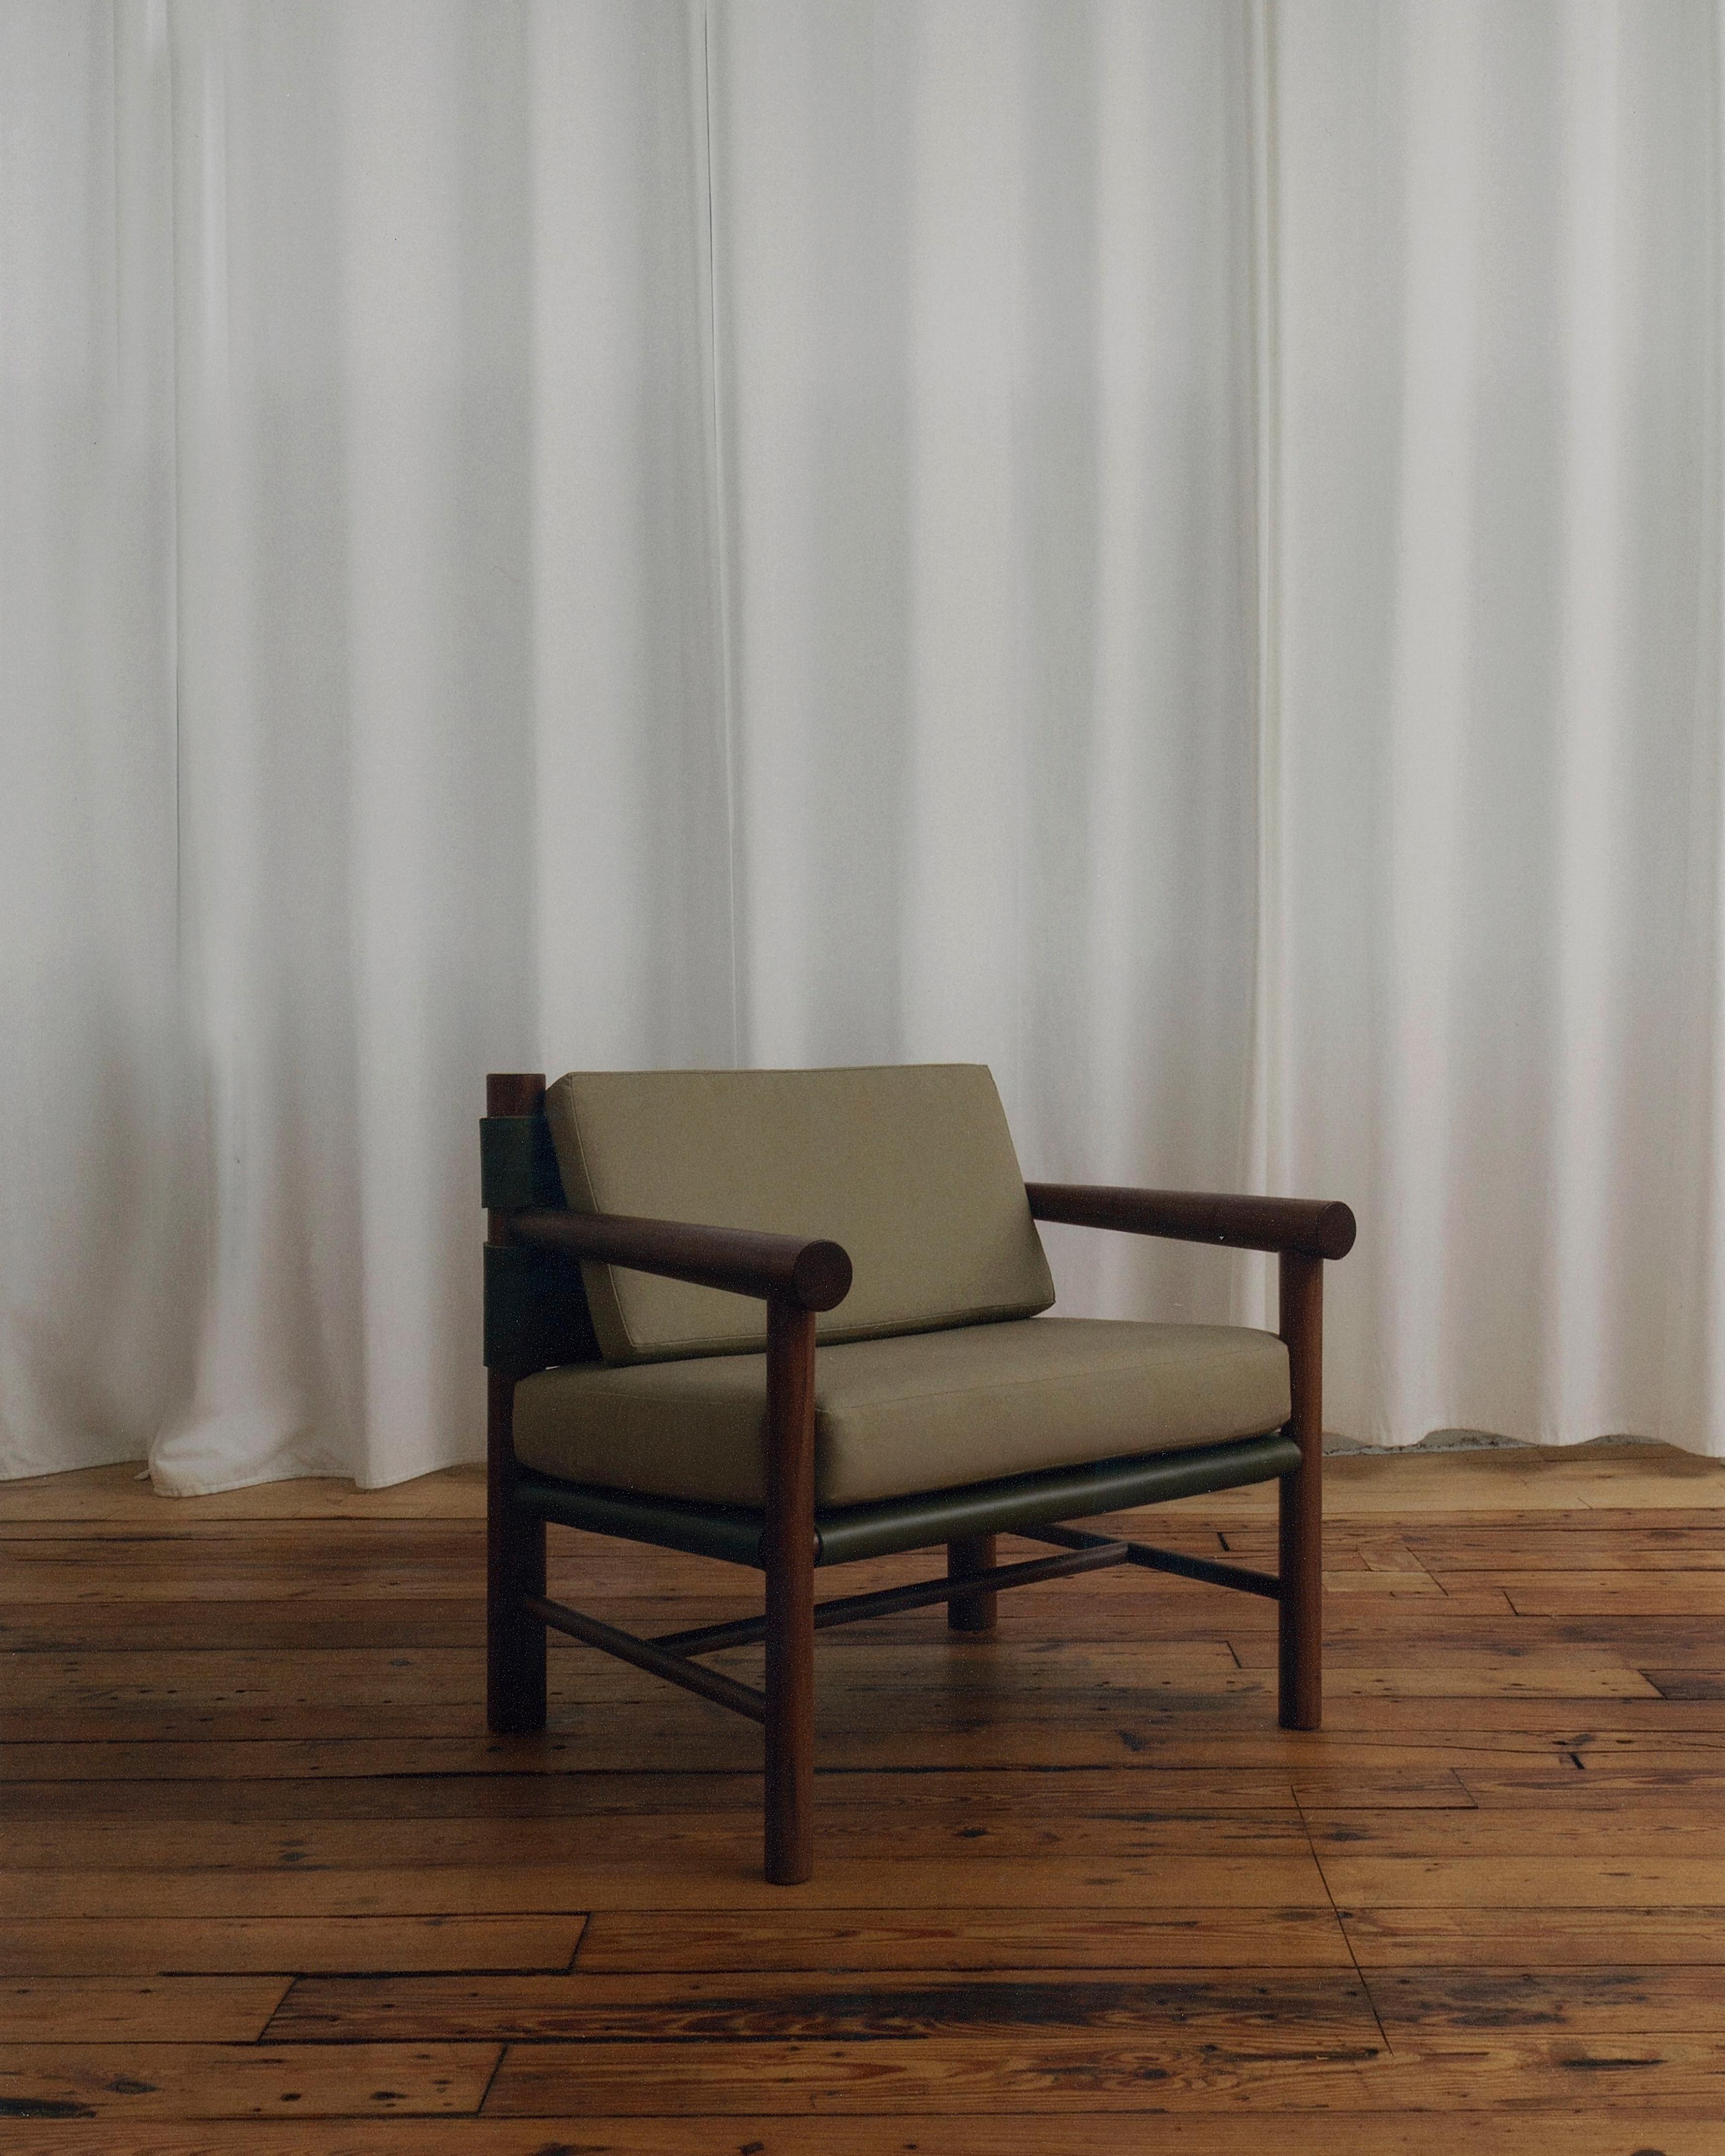 Inspiriert von Gebrauchsmöbeln, spielt der Gradual Lounge Chair mit den Proportionen der unterschiedlich großen Holzdrehteile. Die Vorder- und Hinterbeine haben unterschiedliche Durchmesser, und die Rückseite verjüngt sich allmählich, so dass die